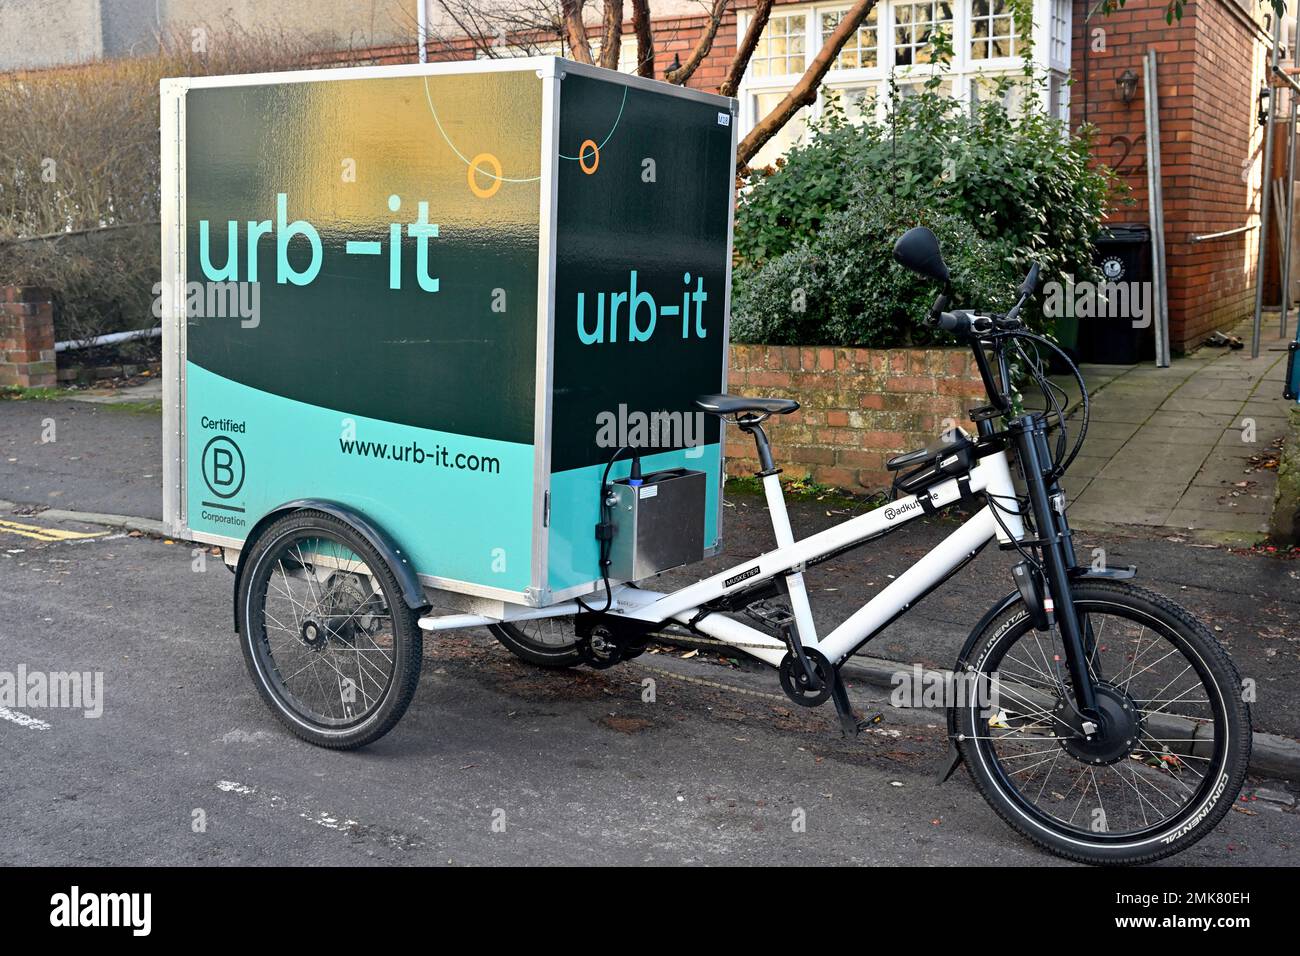 Cargo-Bike für die Lieferung von Paketen durch den Fahrradkurier urb-it vor Häusern in England Stockfoto